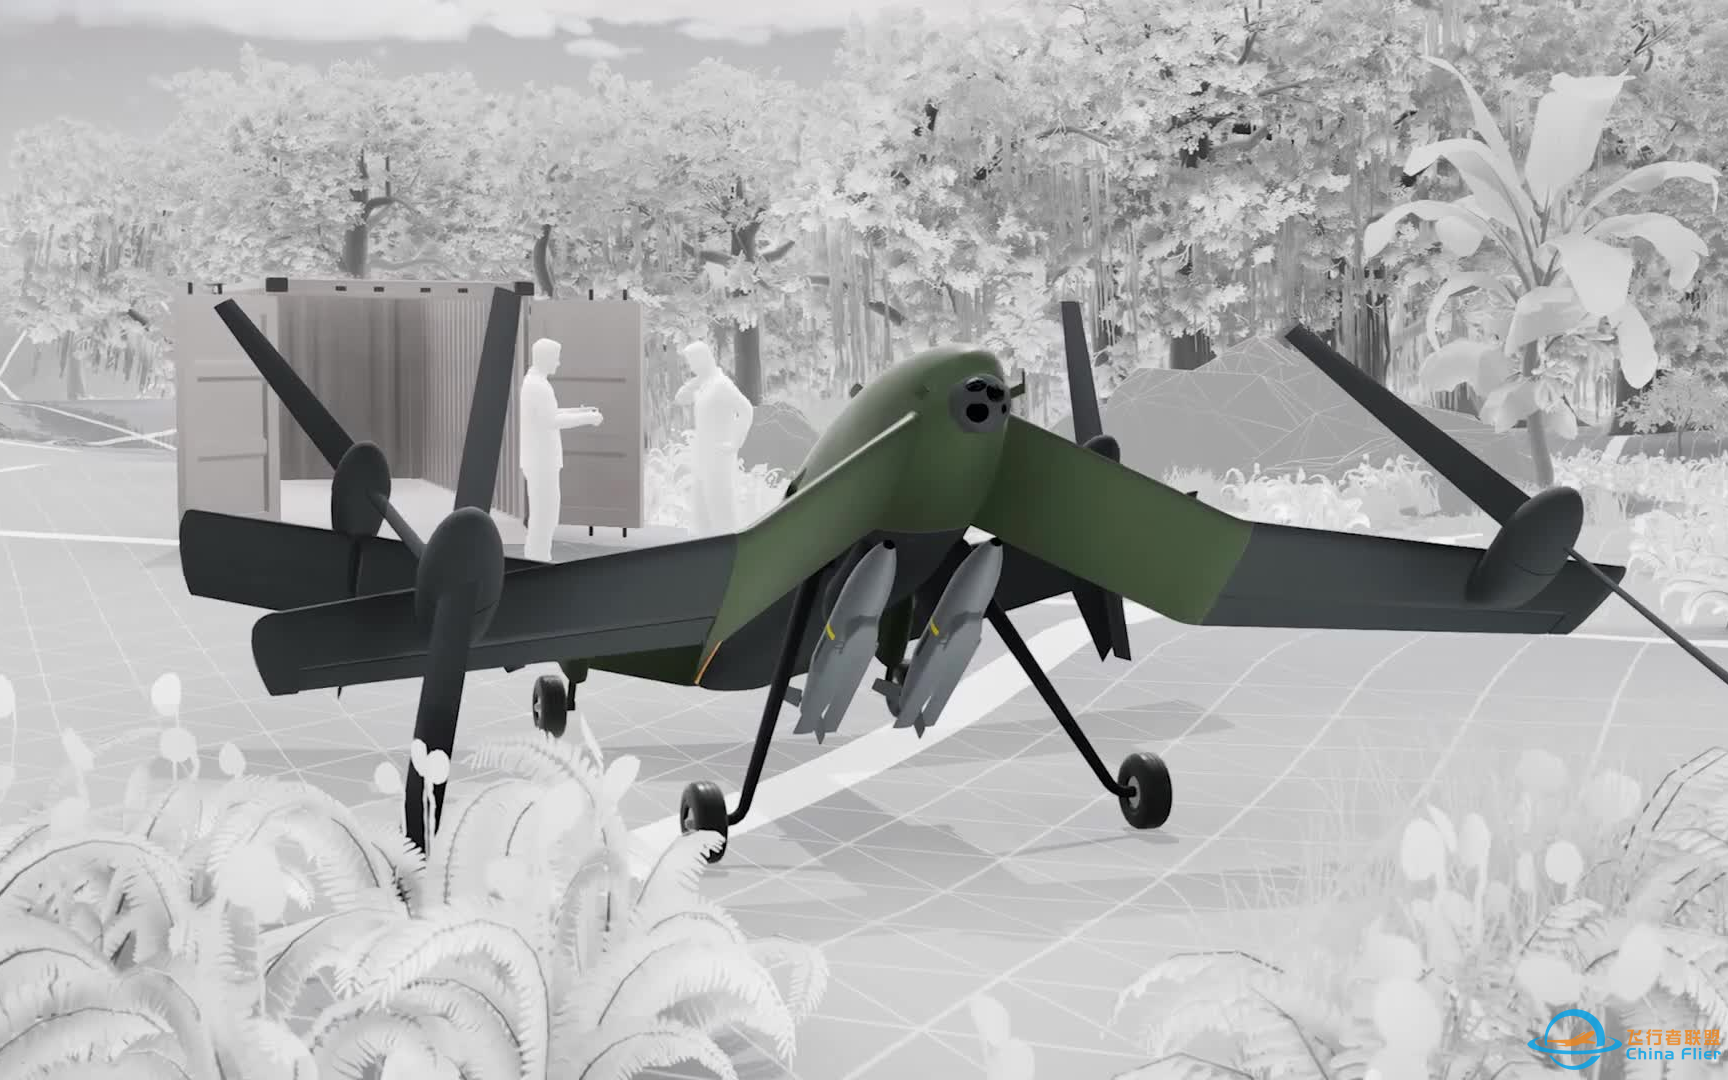 BAE 推出混合动力 eVTOL 无人机打击系统 STRIX，采用类尾座式布局，可搭载 160 公斤的有效载荷飞行 800 公里。-1.png